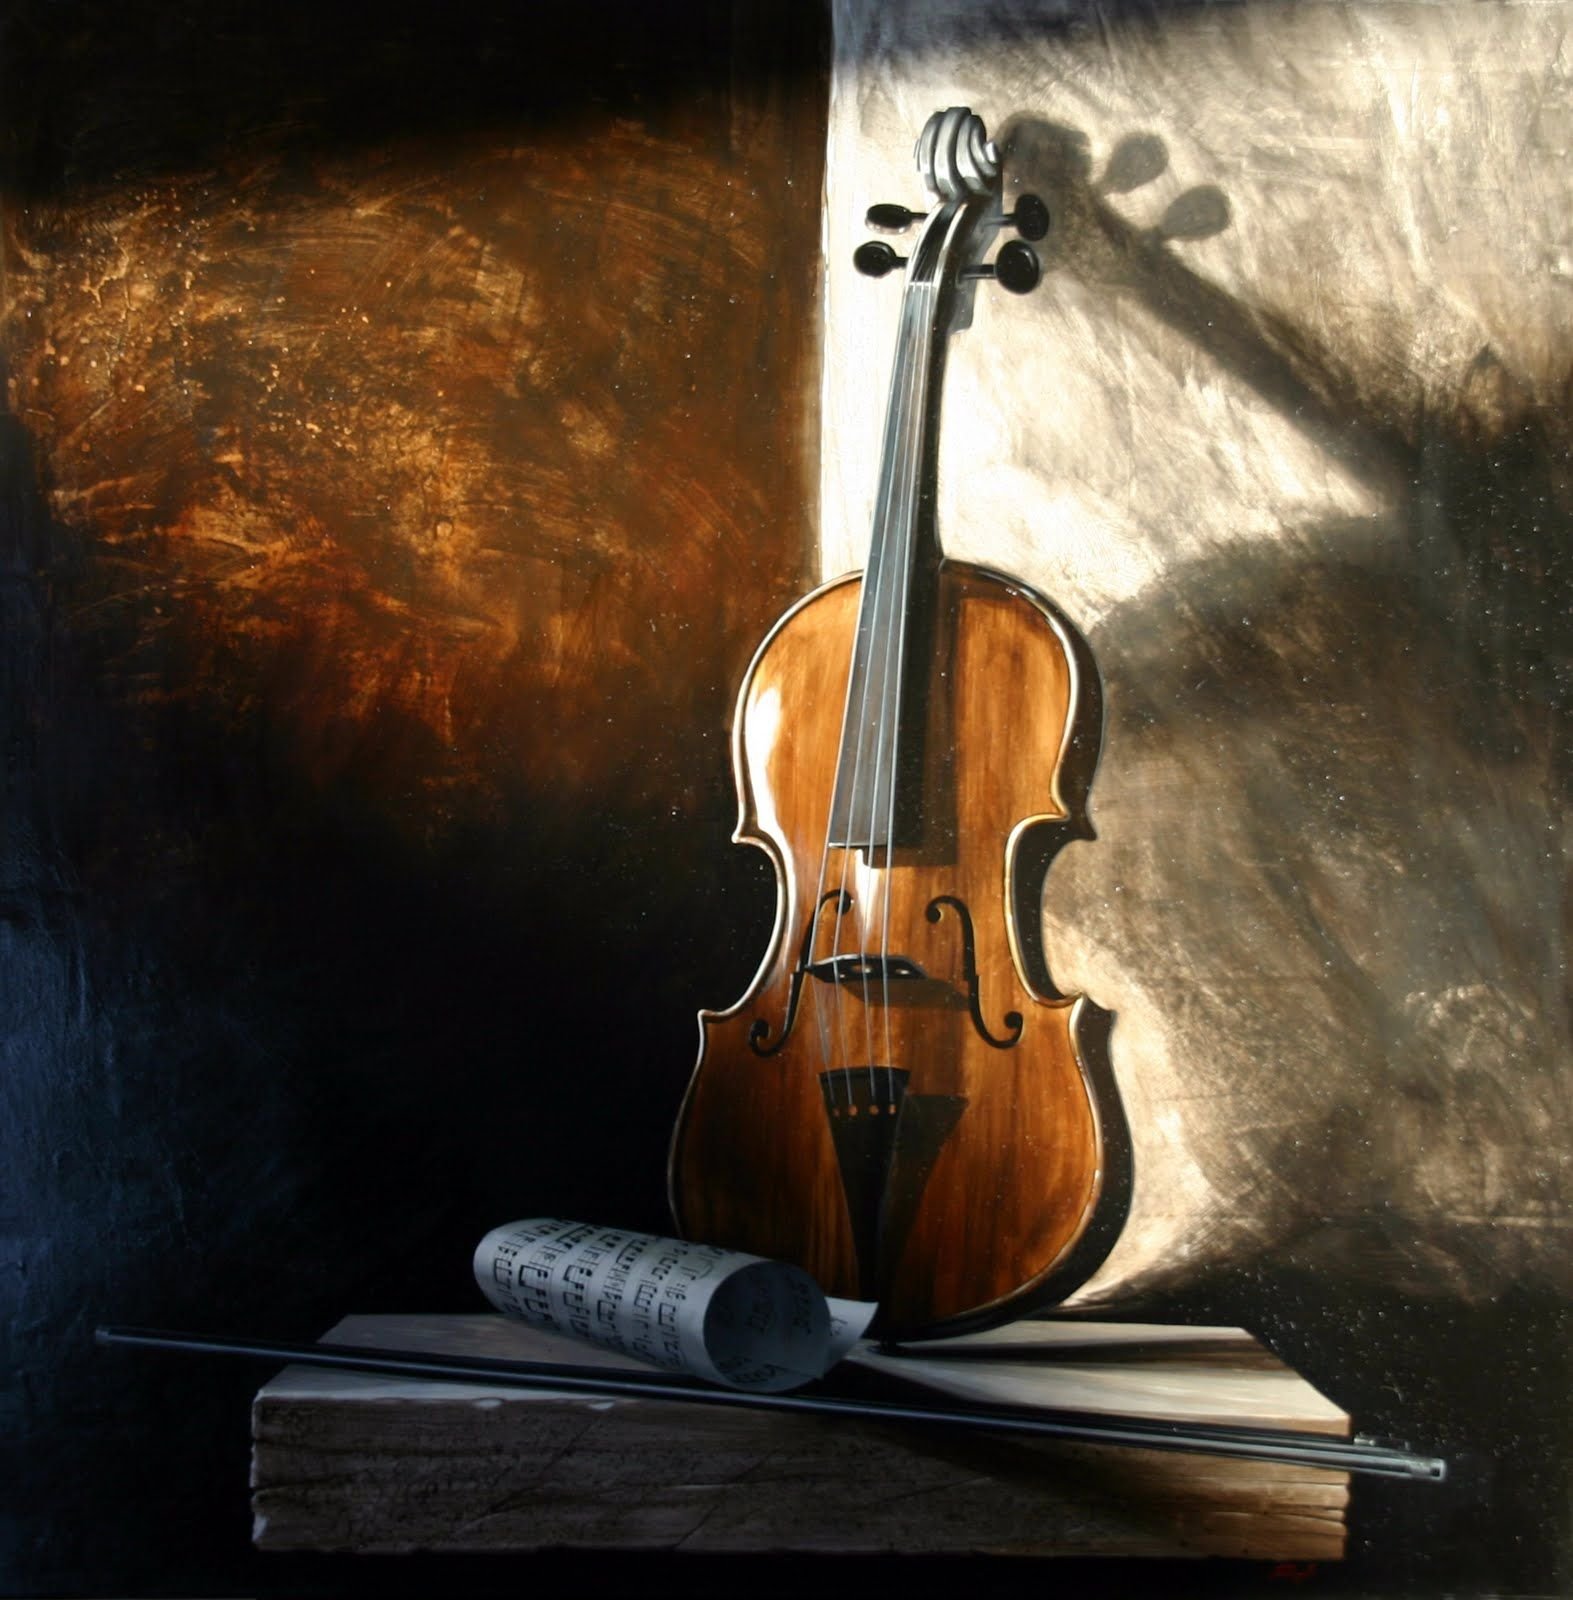 Violin скрипка. Скрипка. Красивая скрипка. Натюрморт с музыкальными инструментами. Скрипка фото.